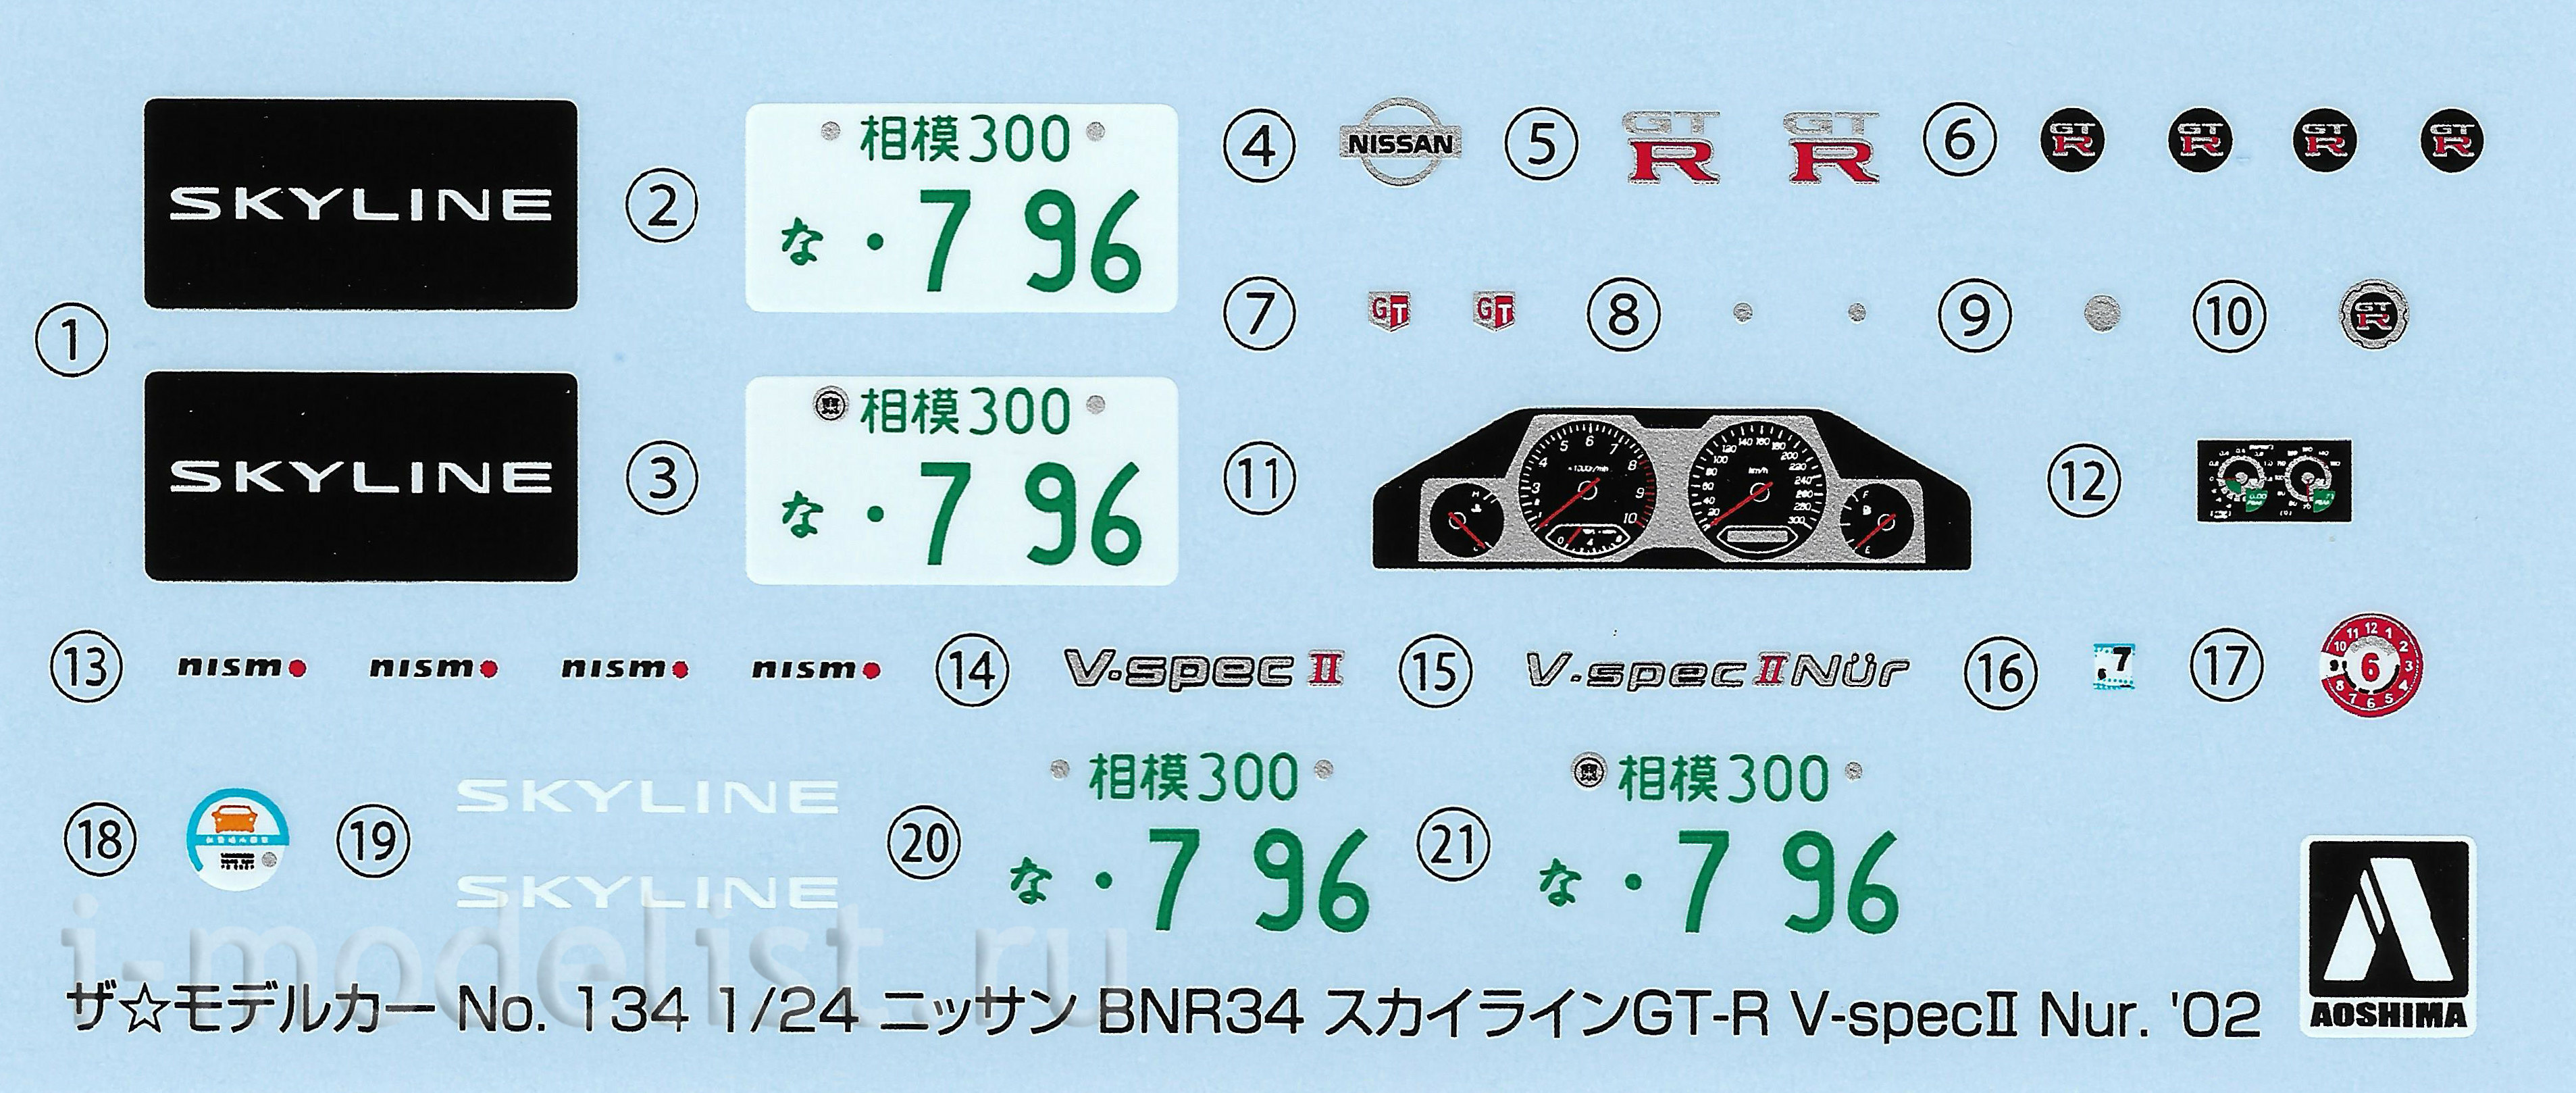 06275 Aoshima 1/24 Nissan BNR34 Skyline GT-R V-specII Nür. '02